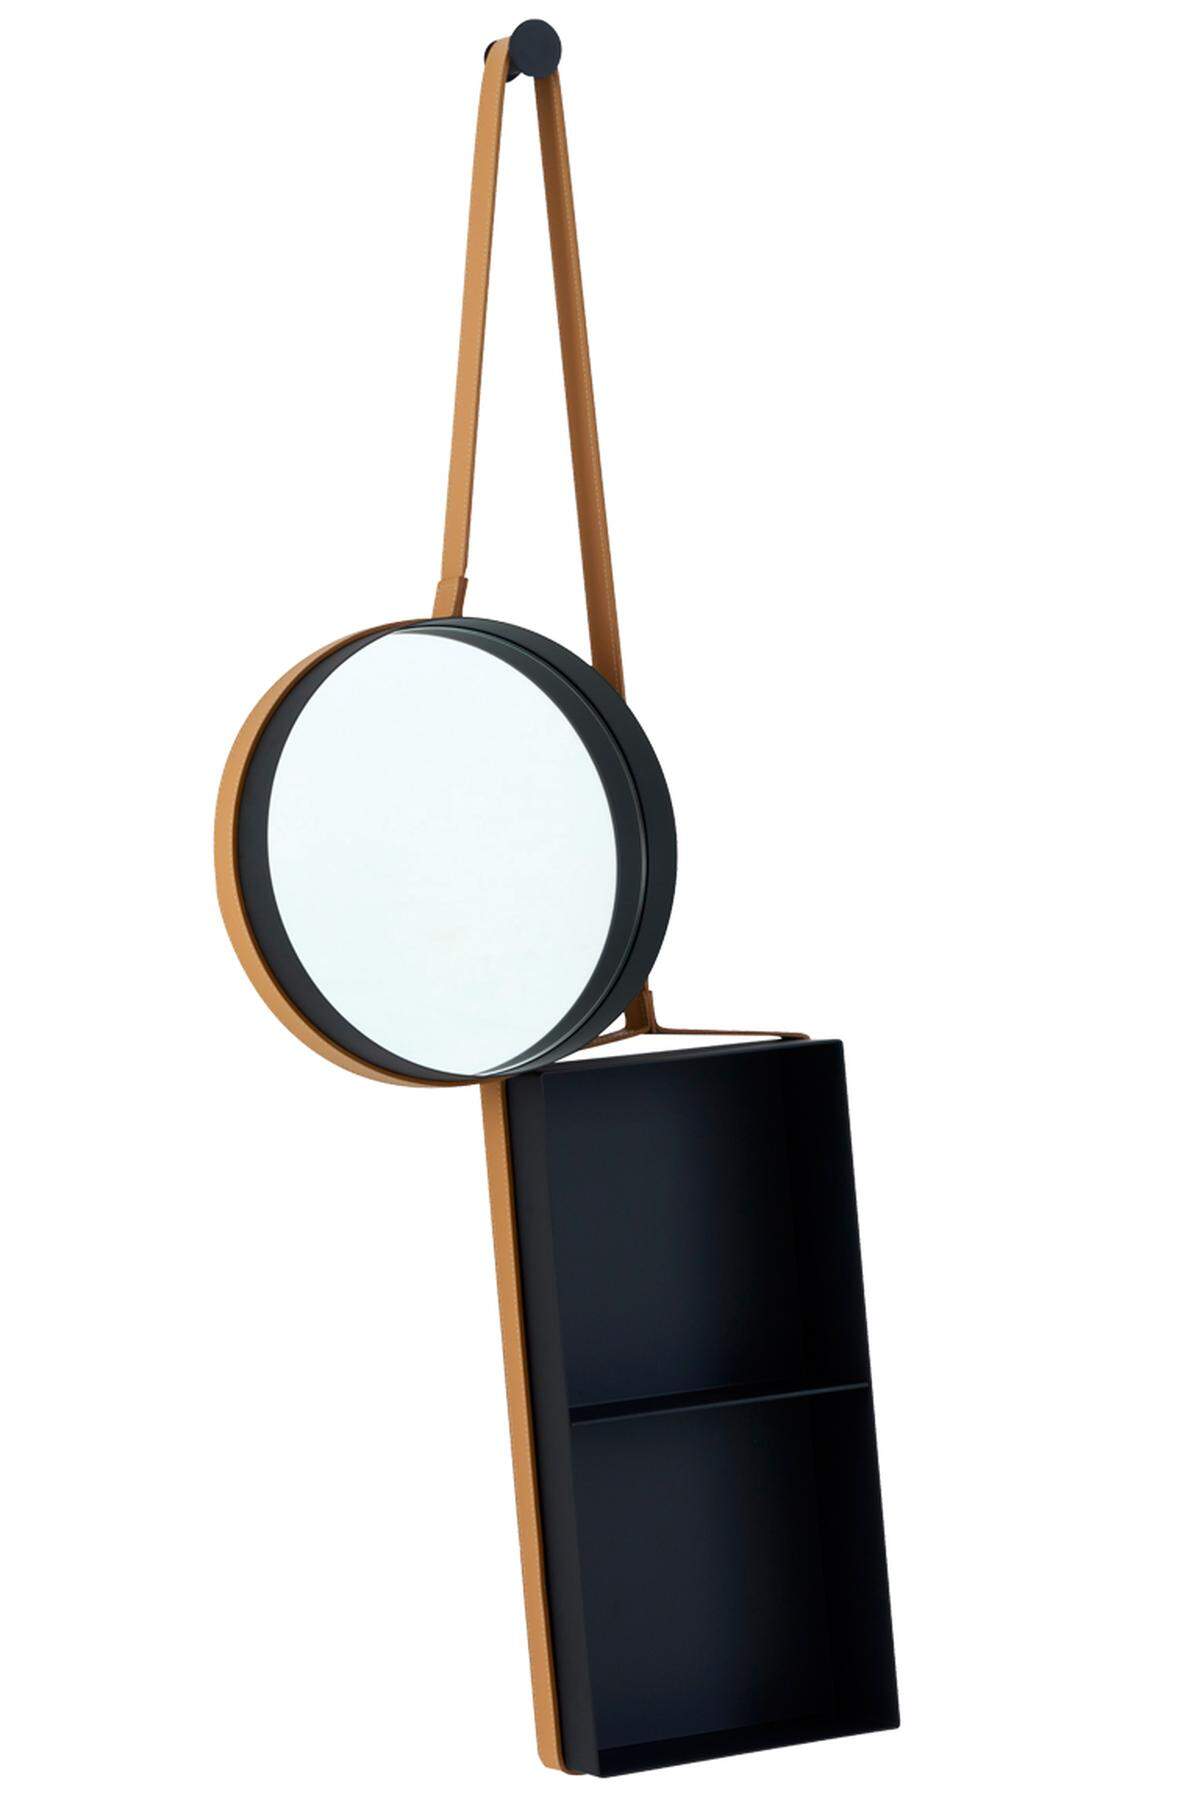 Das „Vanity Shelf“ von Ligne Roset kombiniert das Runde mit dem Eckigen, gleichzeitig einen ledergefassten Spiegel mit einem Regal aus Aluminium. Hängt sich gut ins Bade- oder ins Vorzimmer.